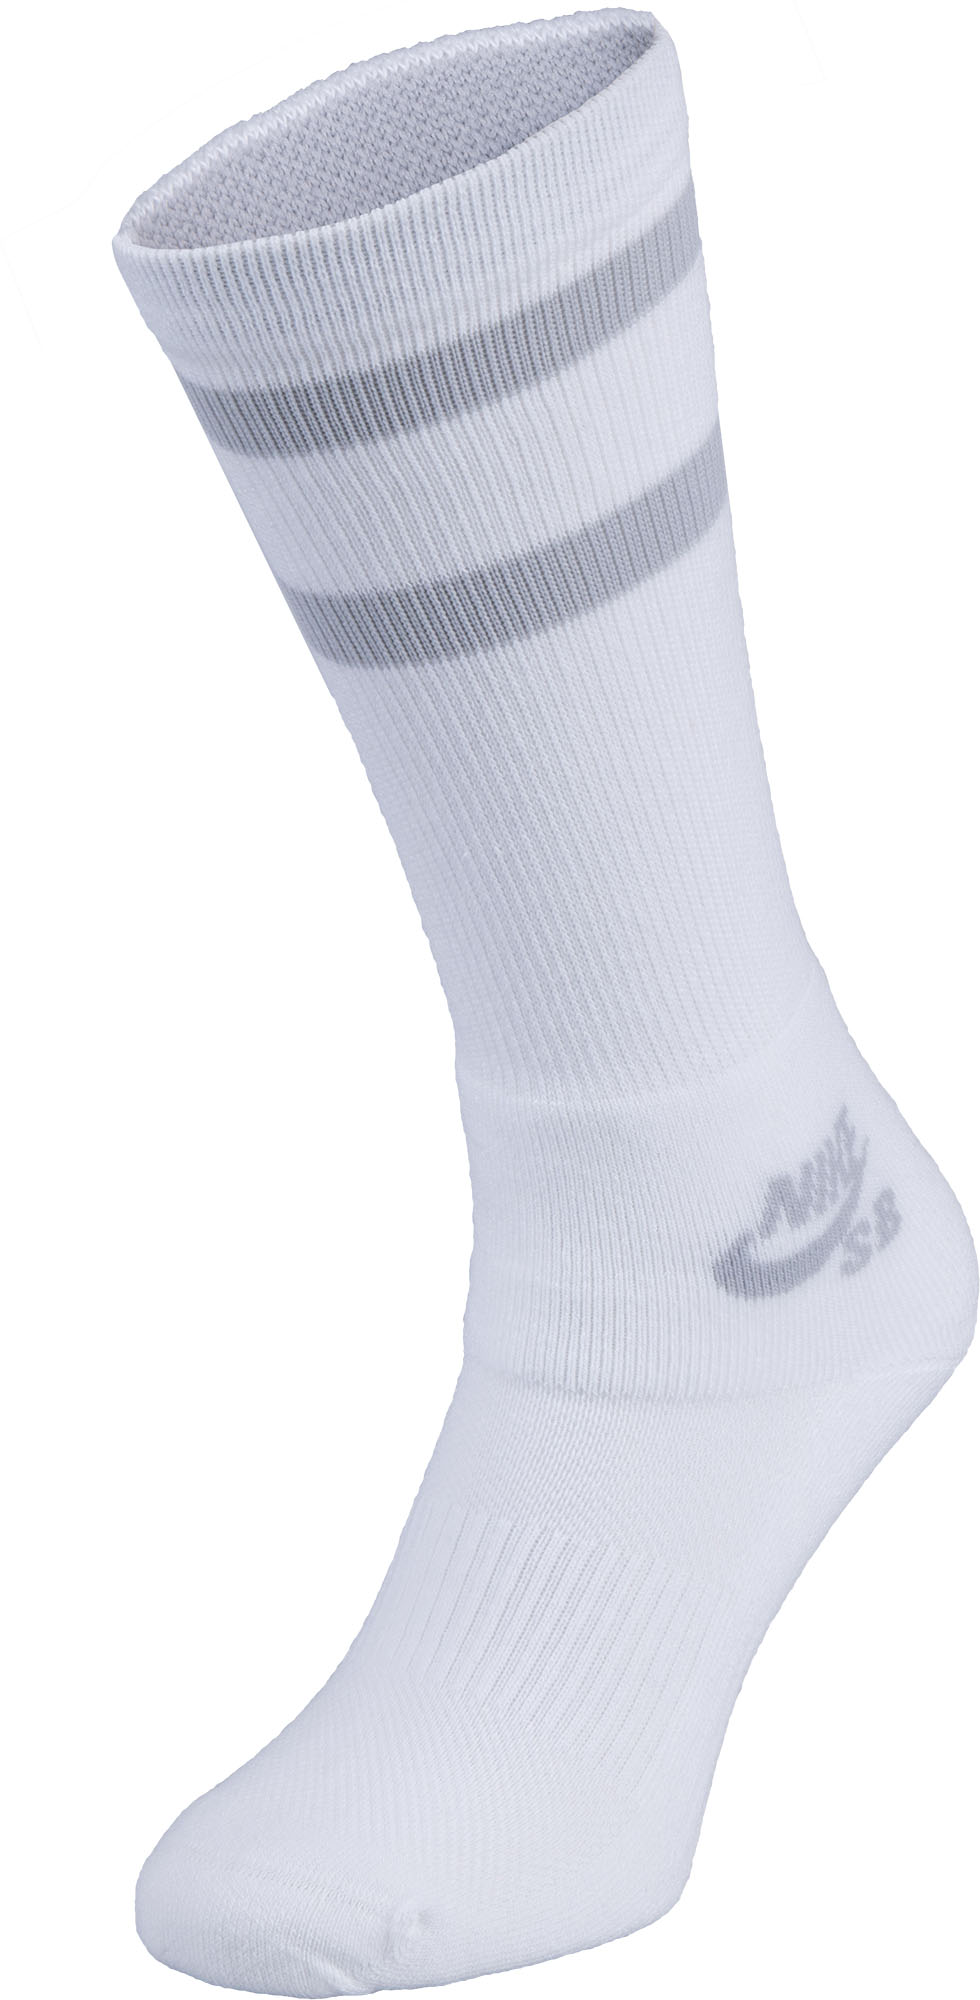 Unisex tall socks